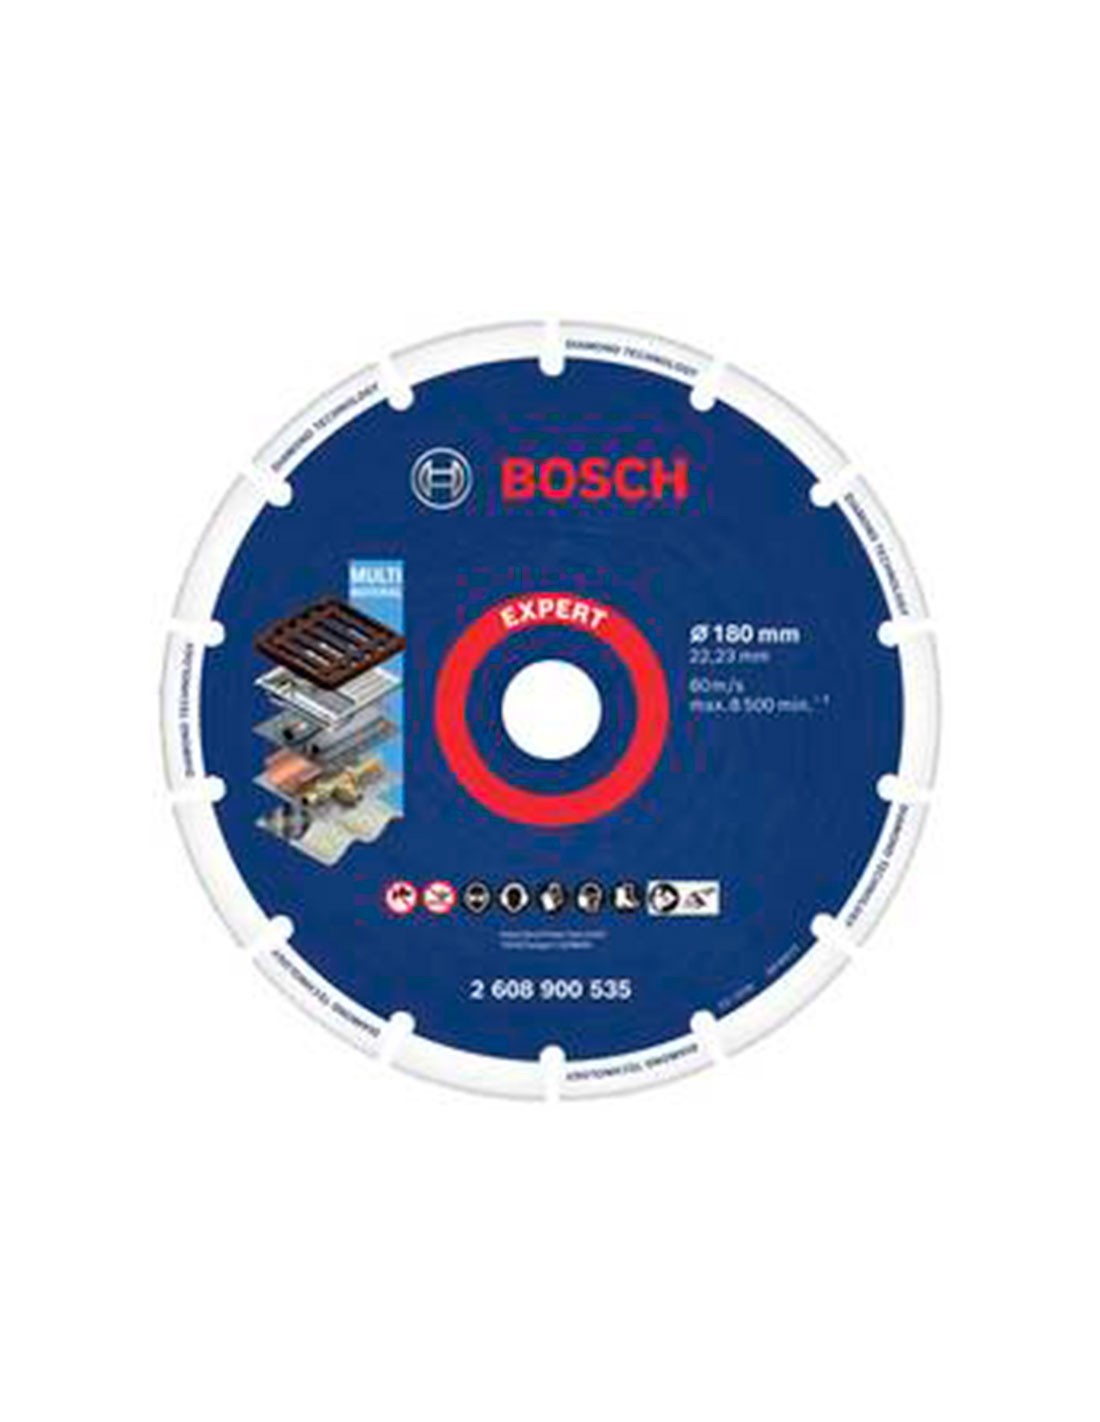 Cabezal de rectificación de diamante Bosch para